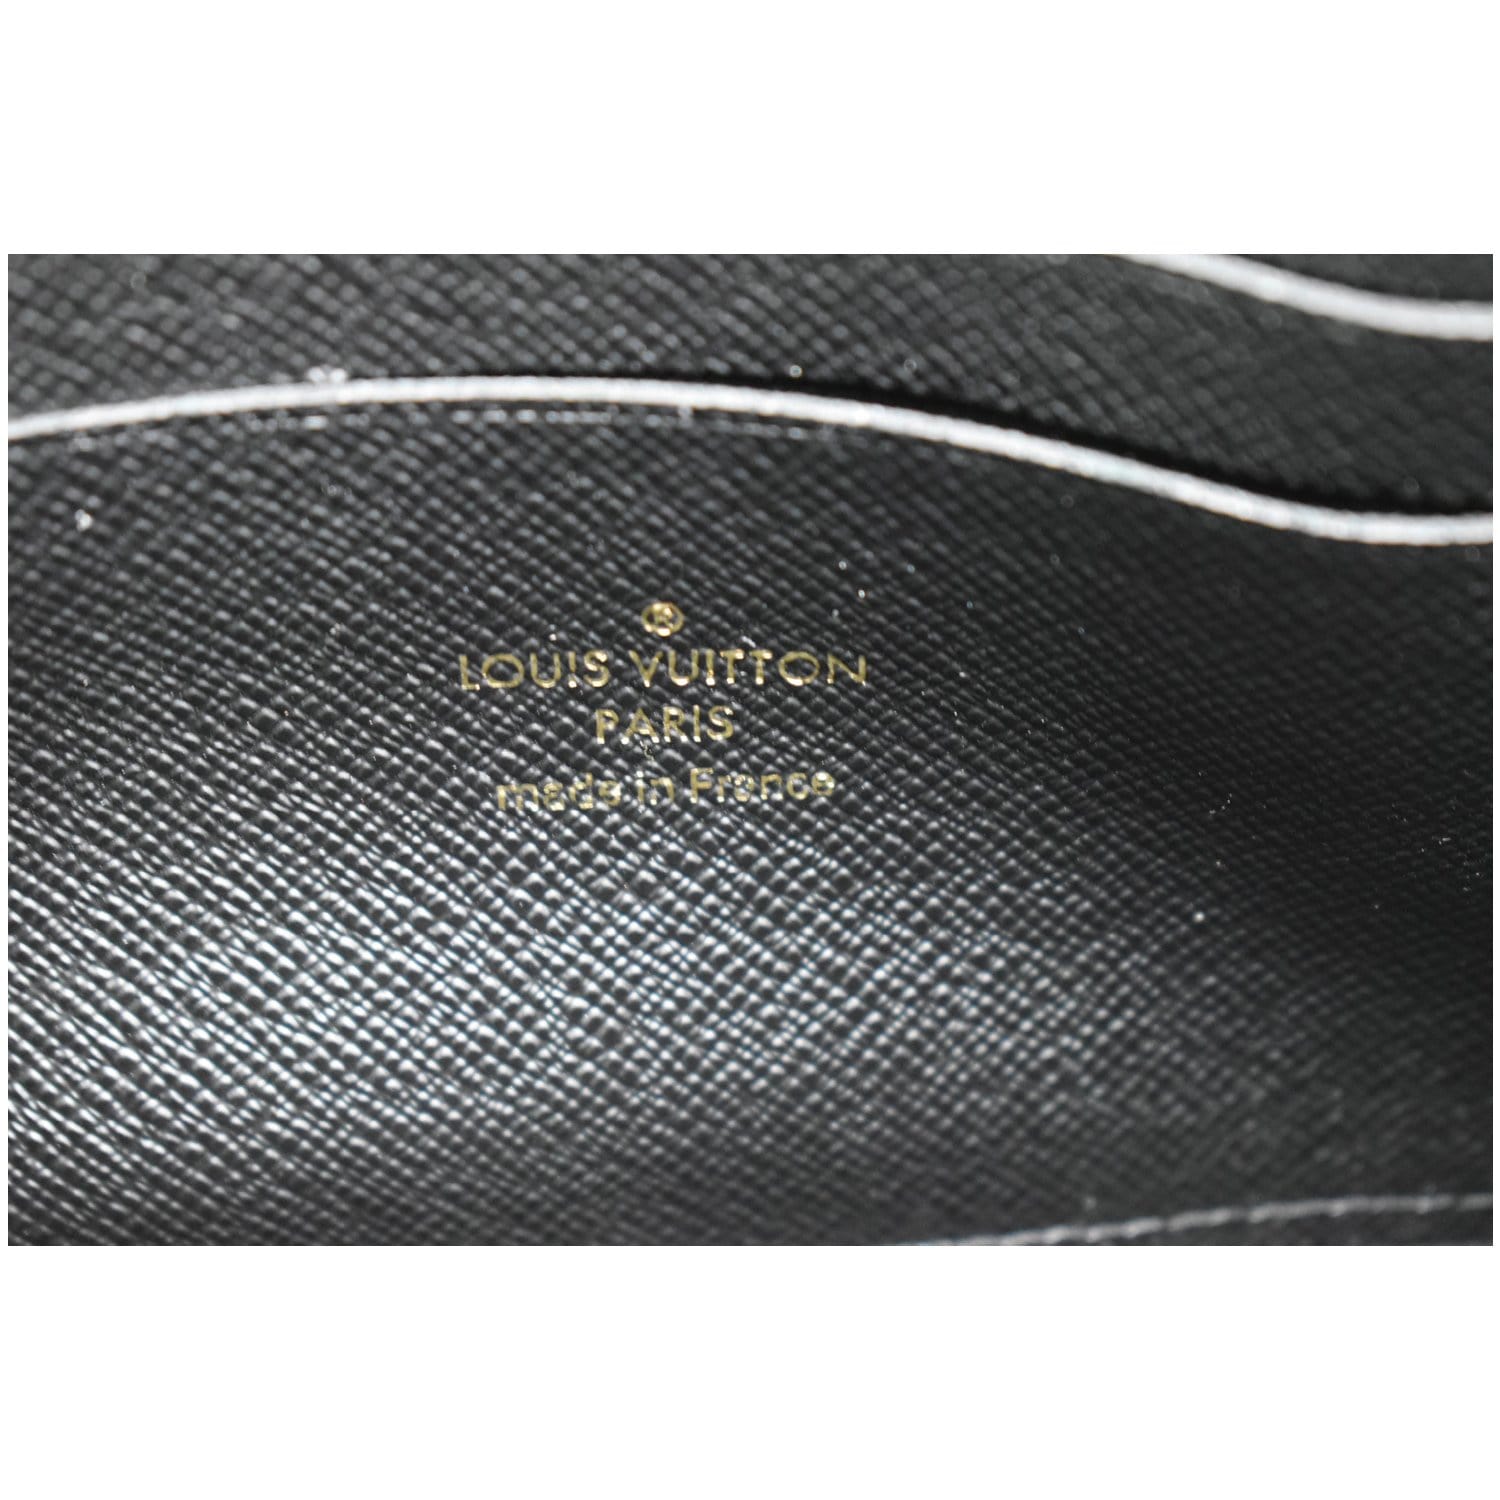 Louis Vuitton, Bags, Sold  5722 New Louie Vuitton Giant Monogram  Double Zip Pouchette